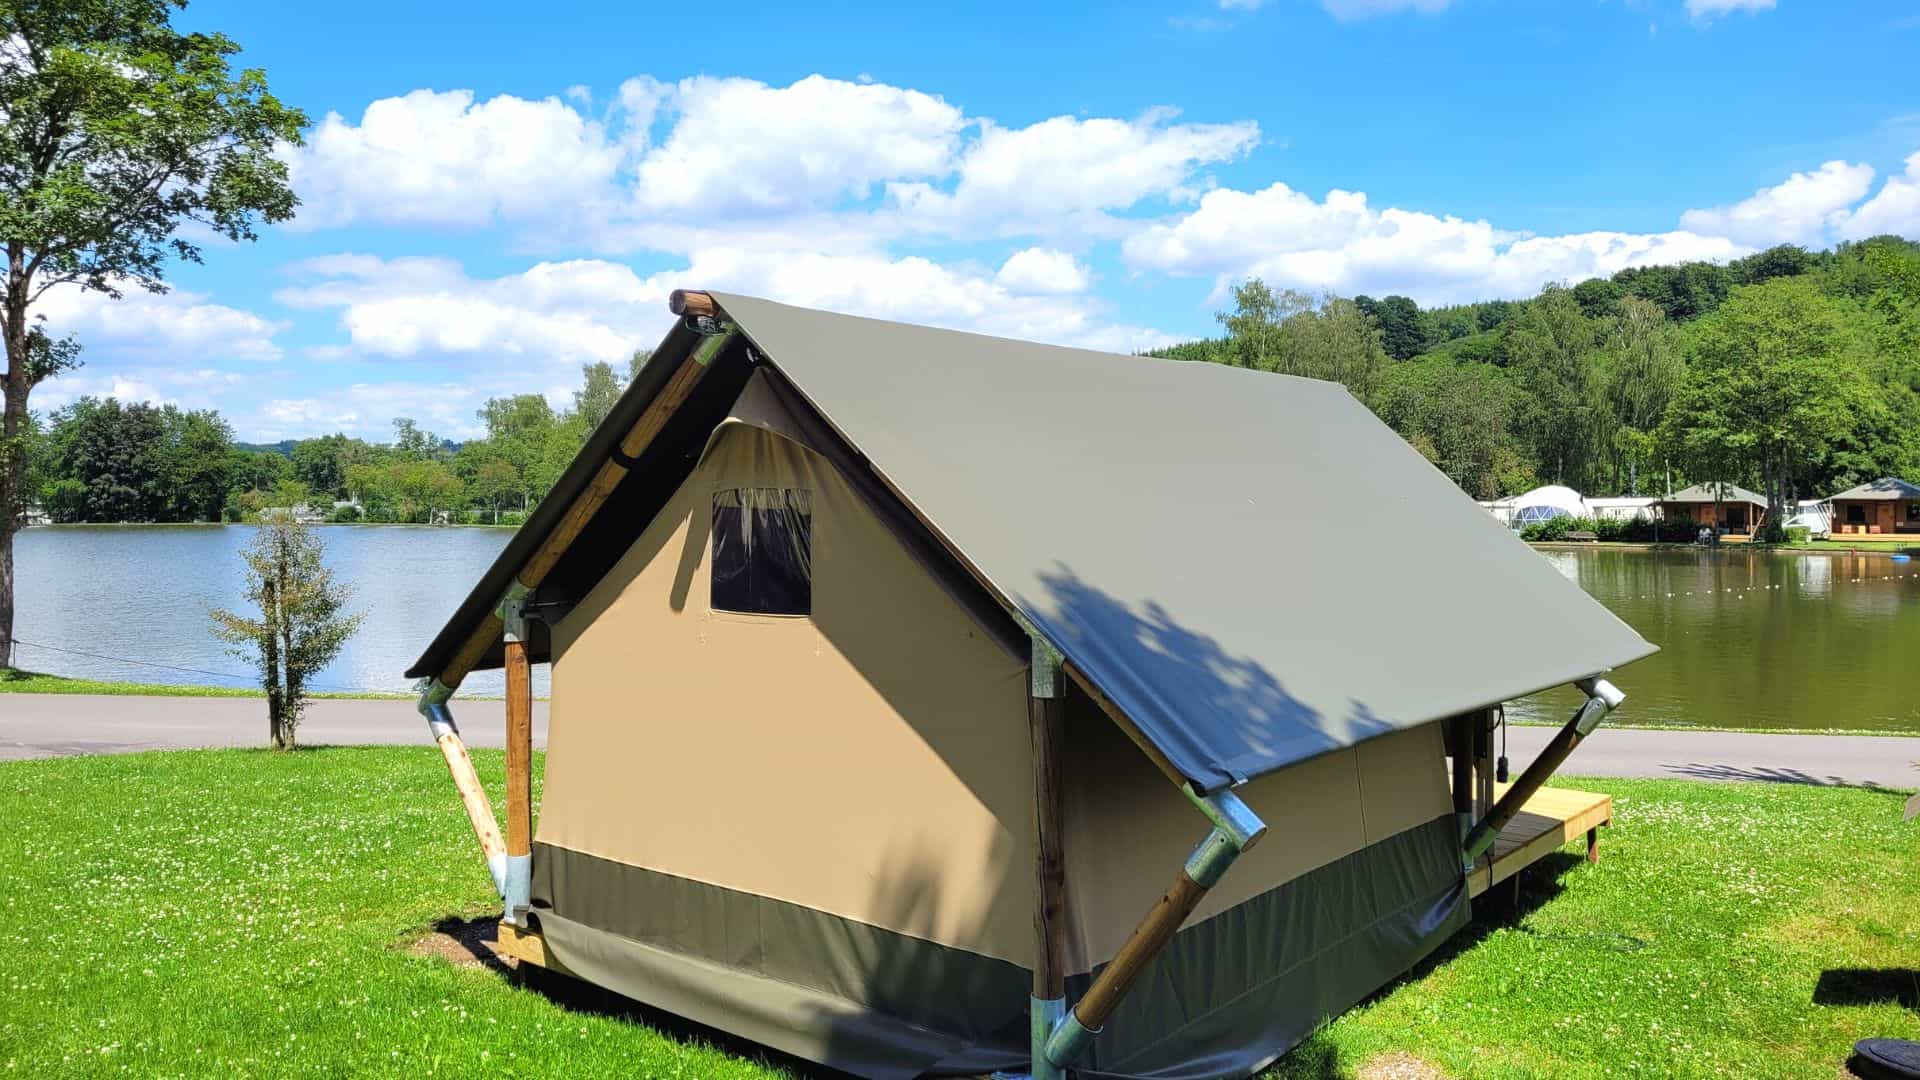 Location de petite tente safari pour 2 personnes en Ardenne. Située juste en face de l'étang de pêche